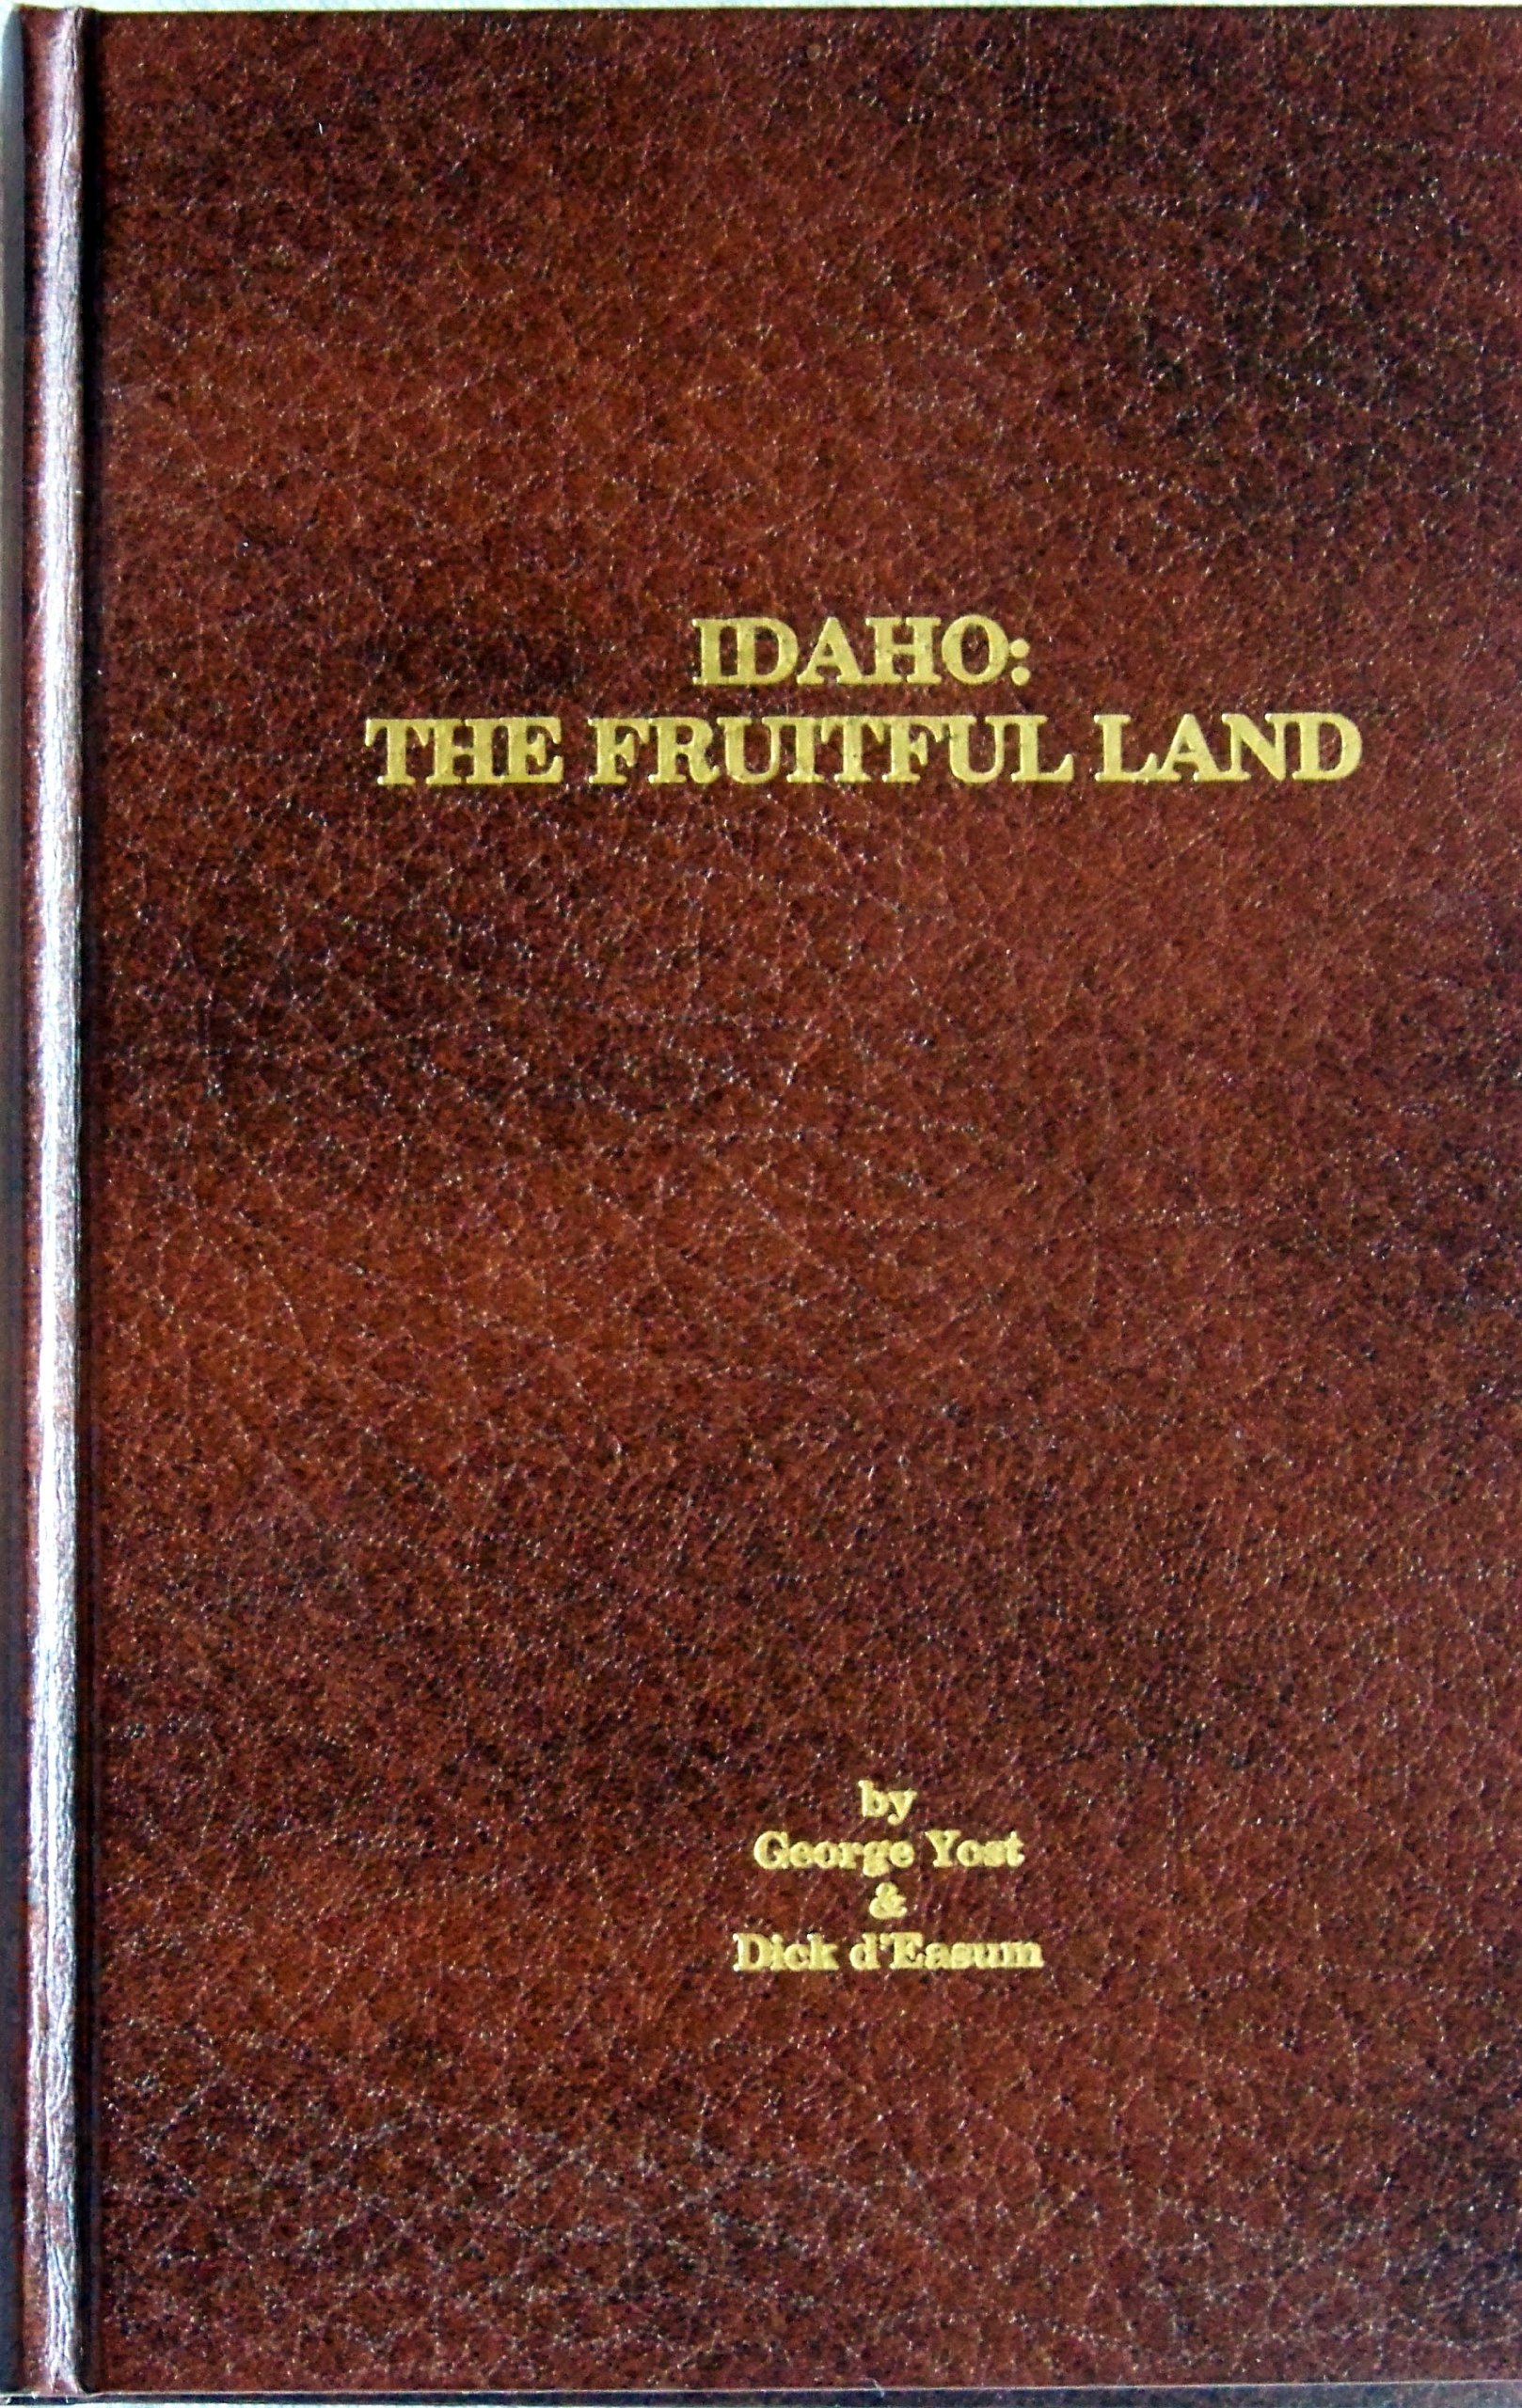 Idaho, the fruitful land (book cover)